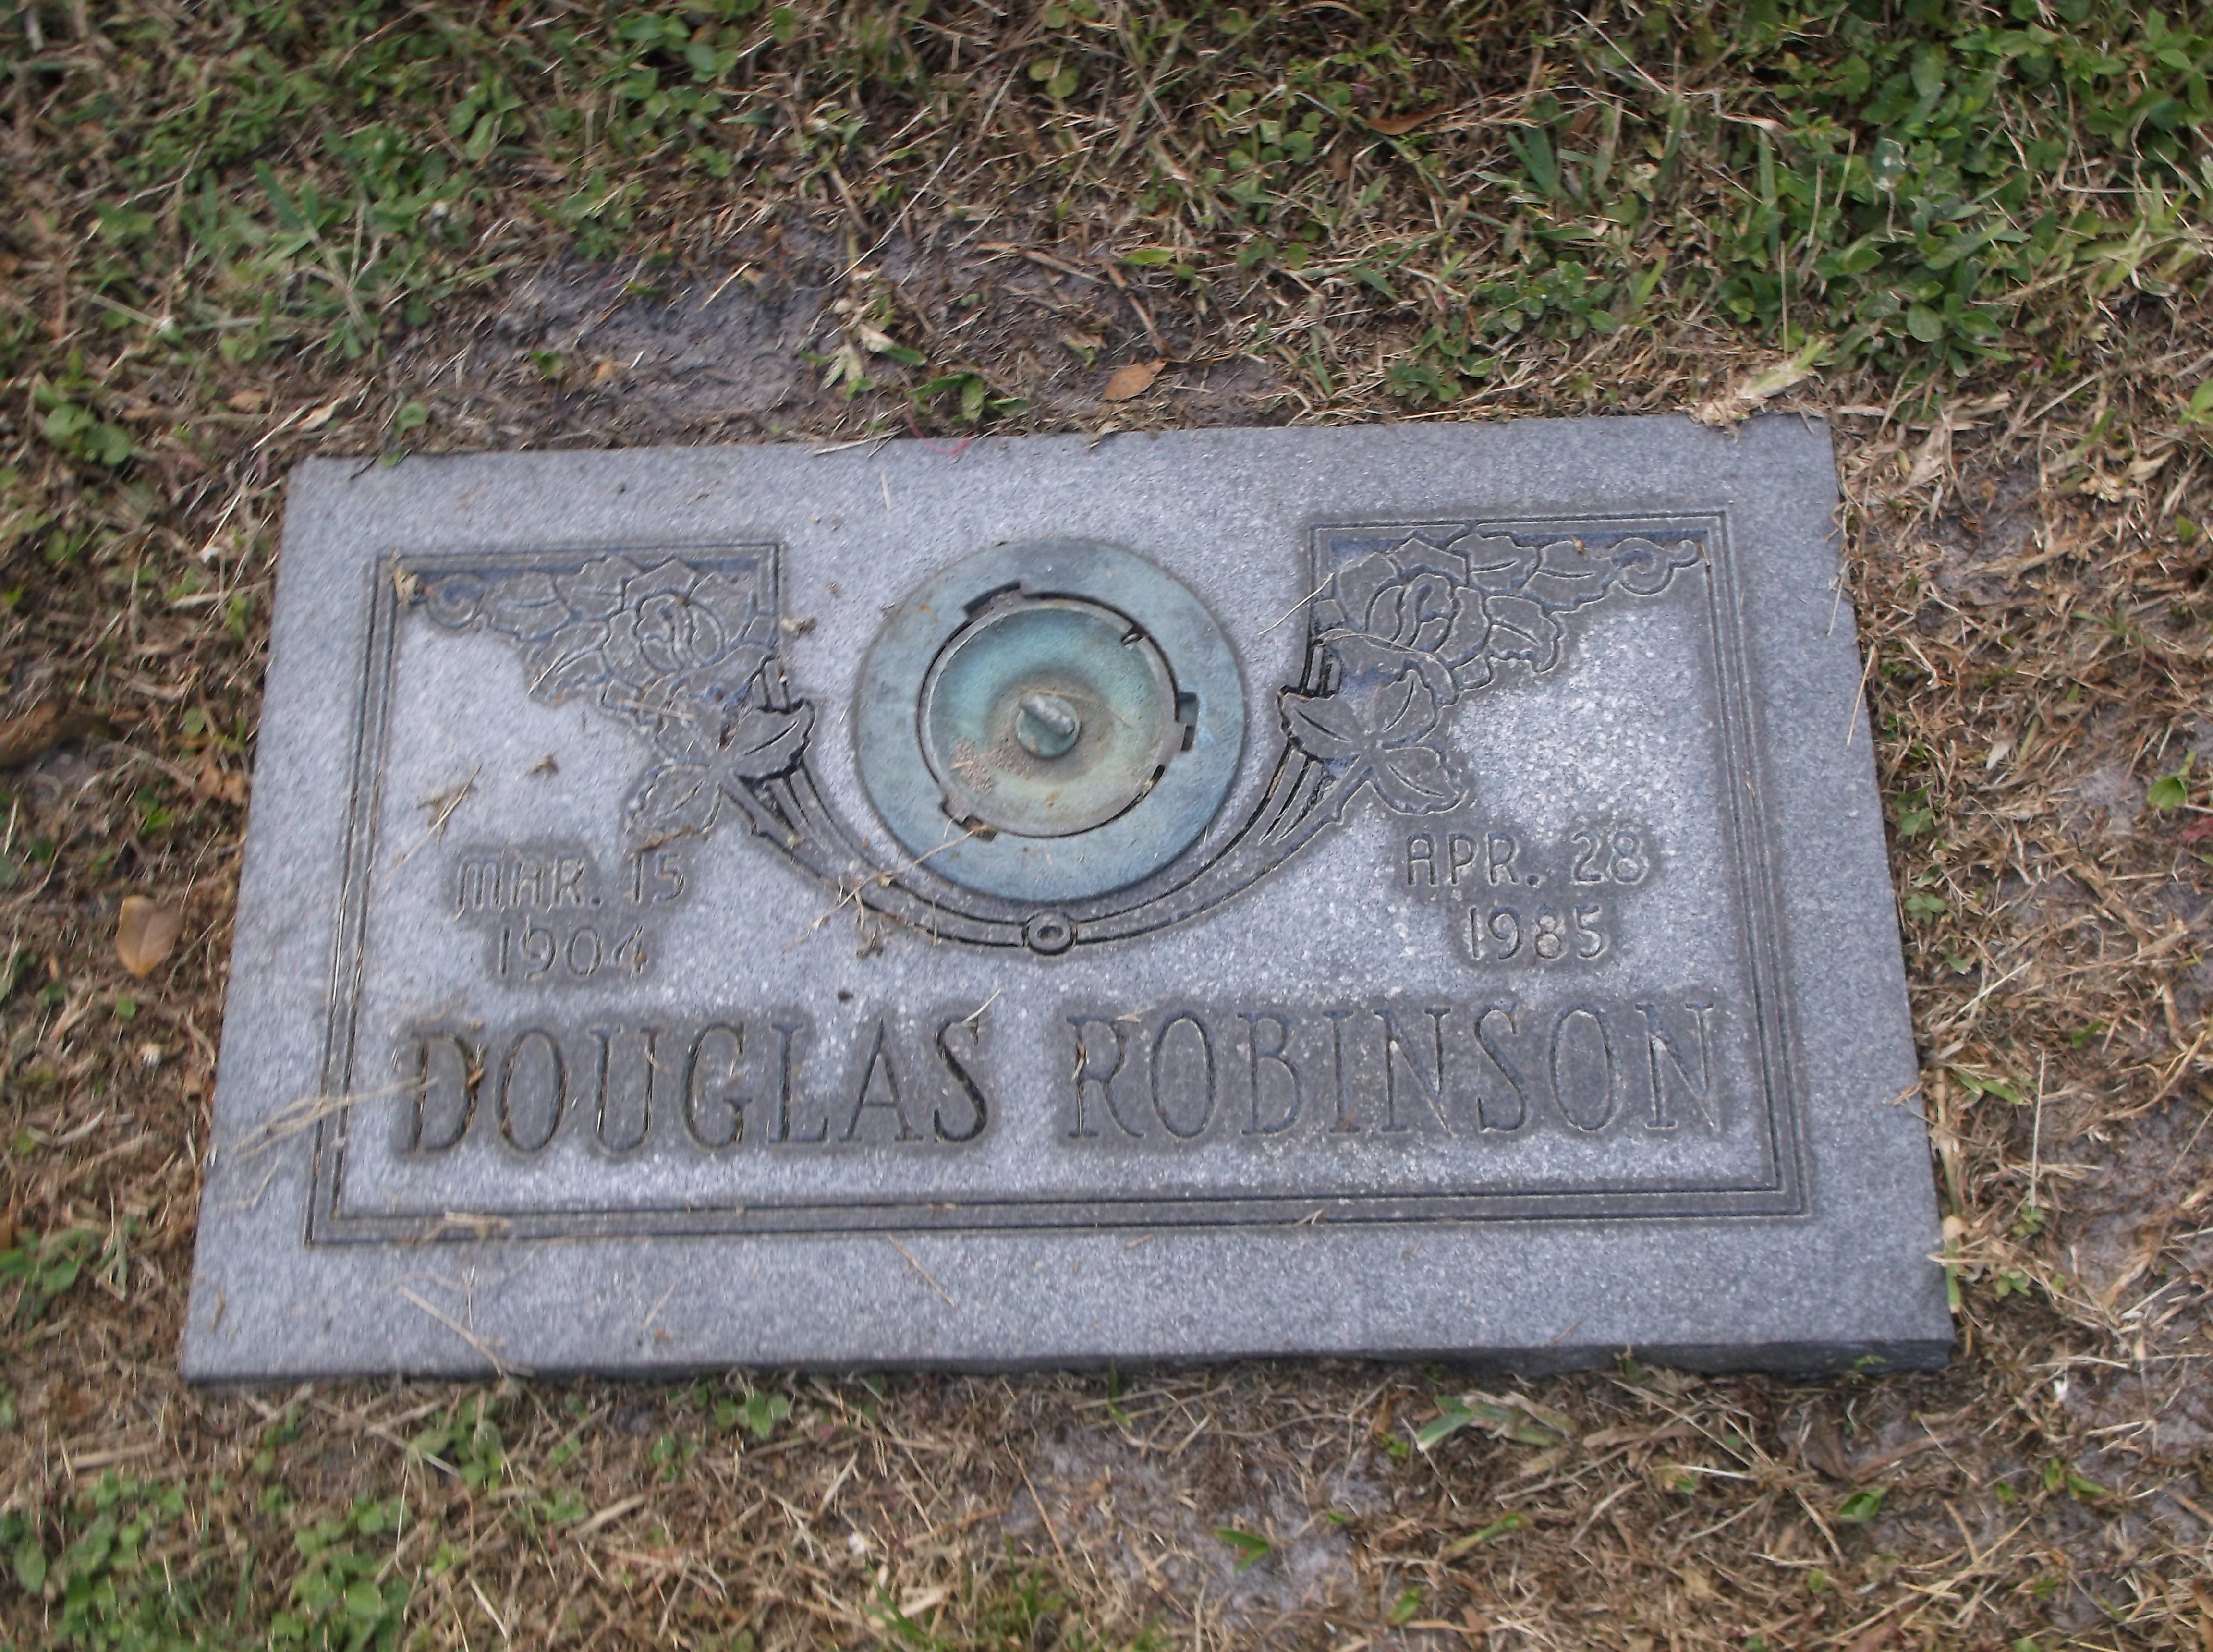 Douglas Robinson